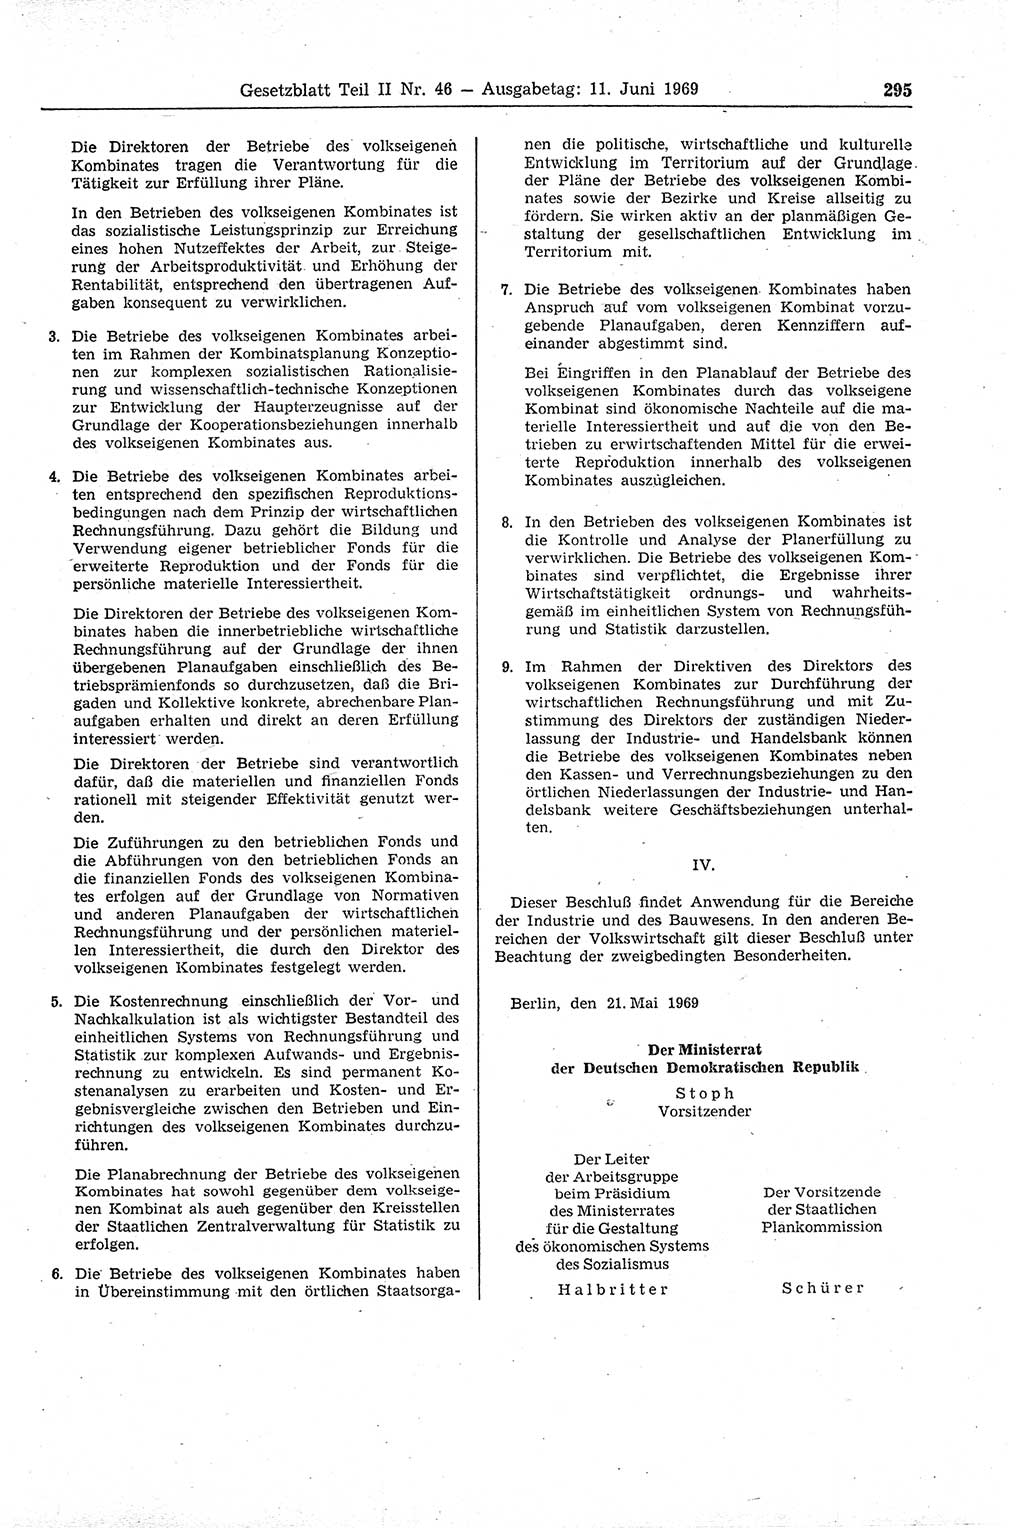 Gesetzblatt (GBl.) der Deutschen Demokratischen Republik (DDR) Teil ⅠⅠ 1969, Seite 295 (GBl. DDR ⅠⅠ 1969, S. 295)